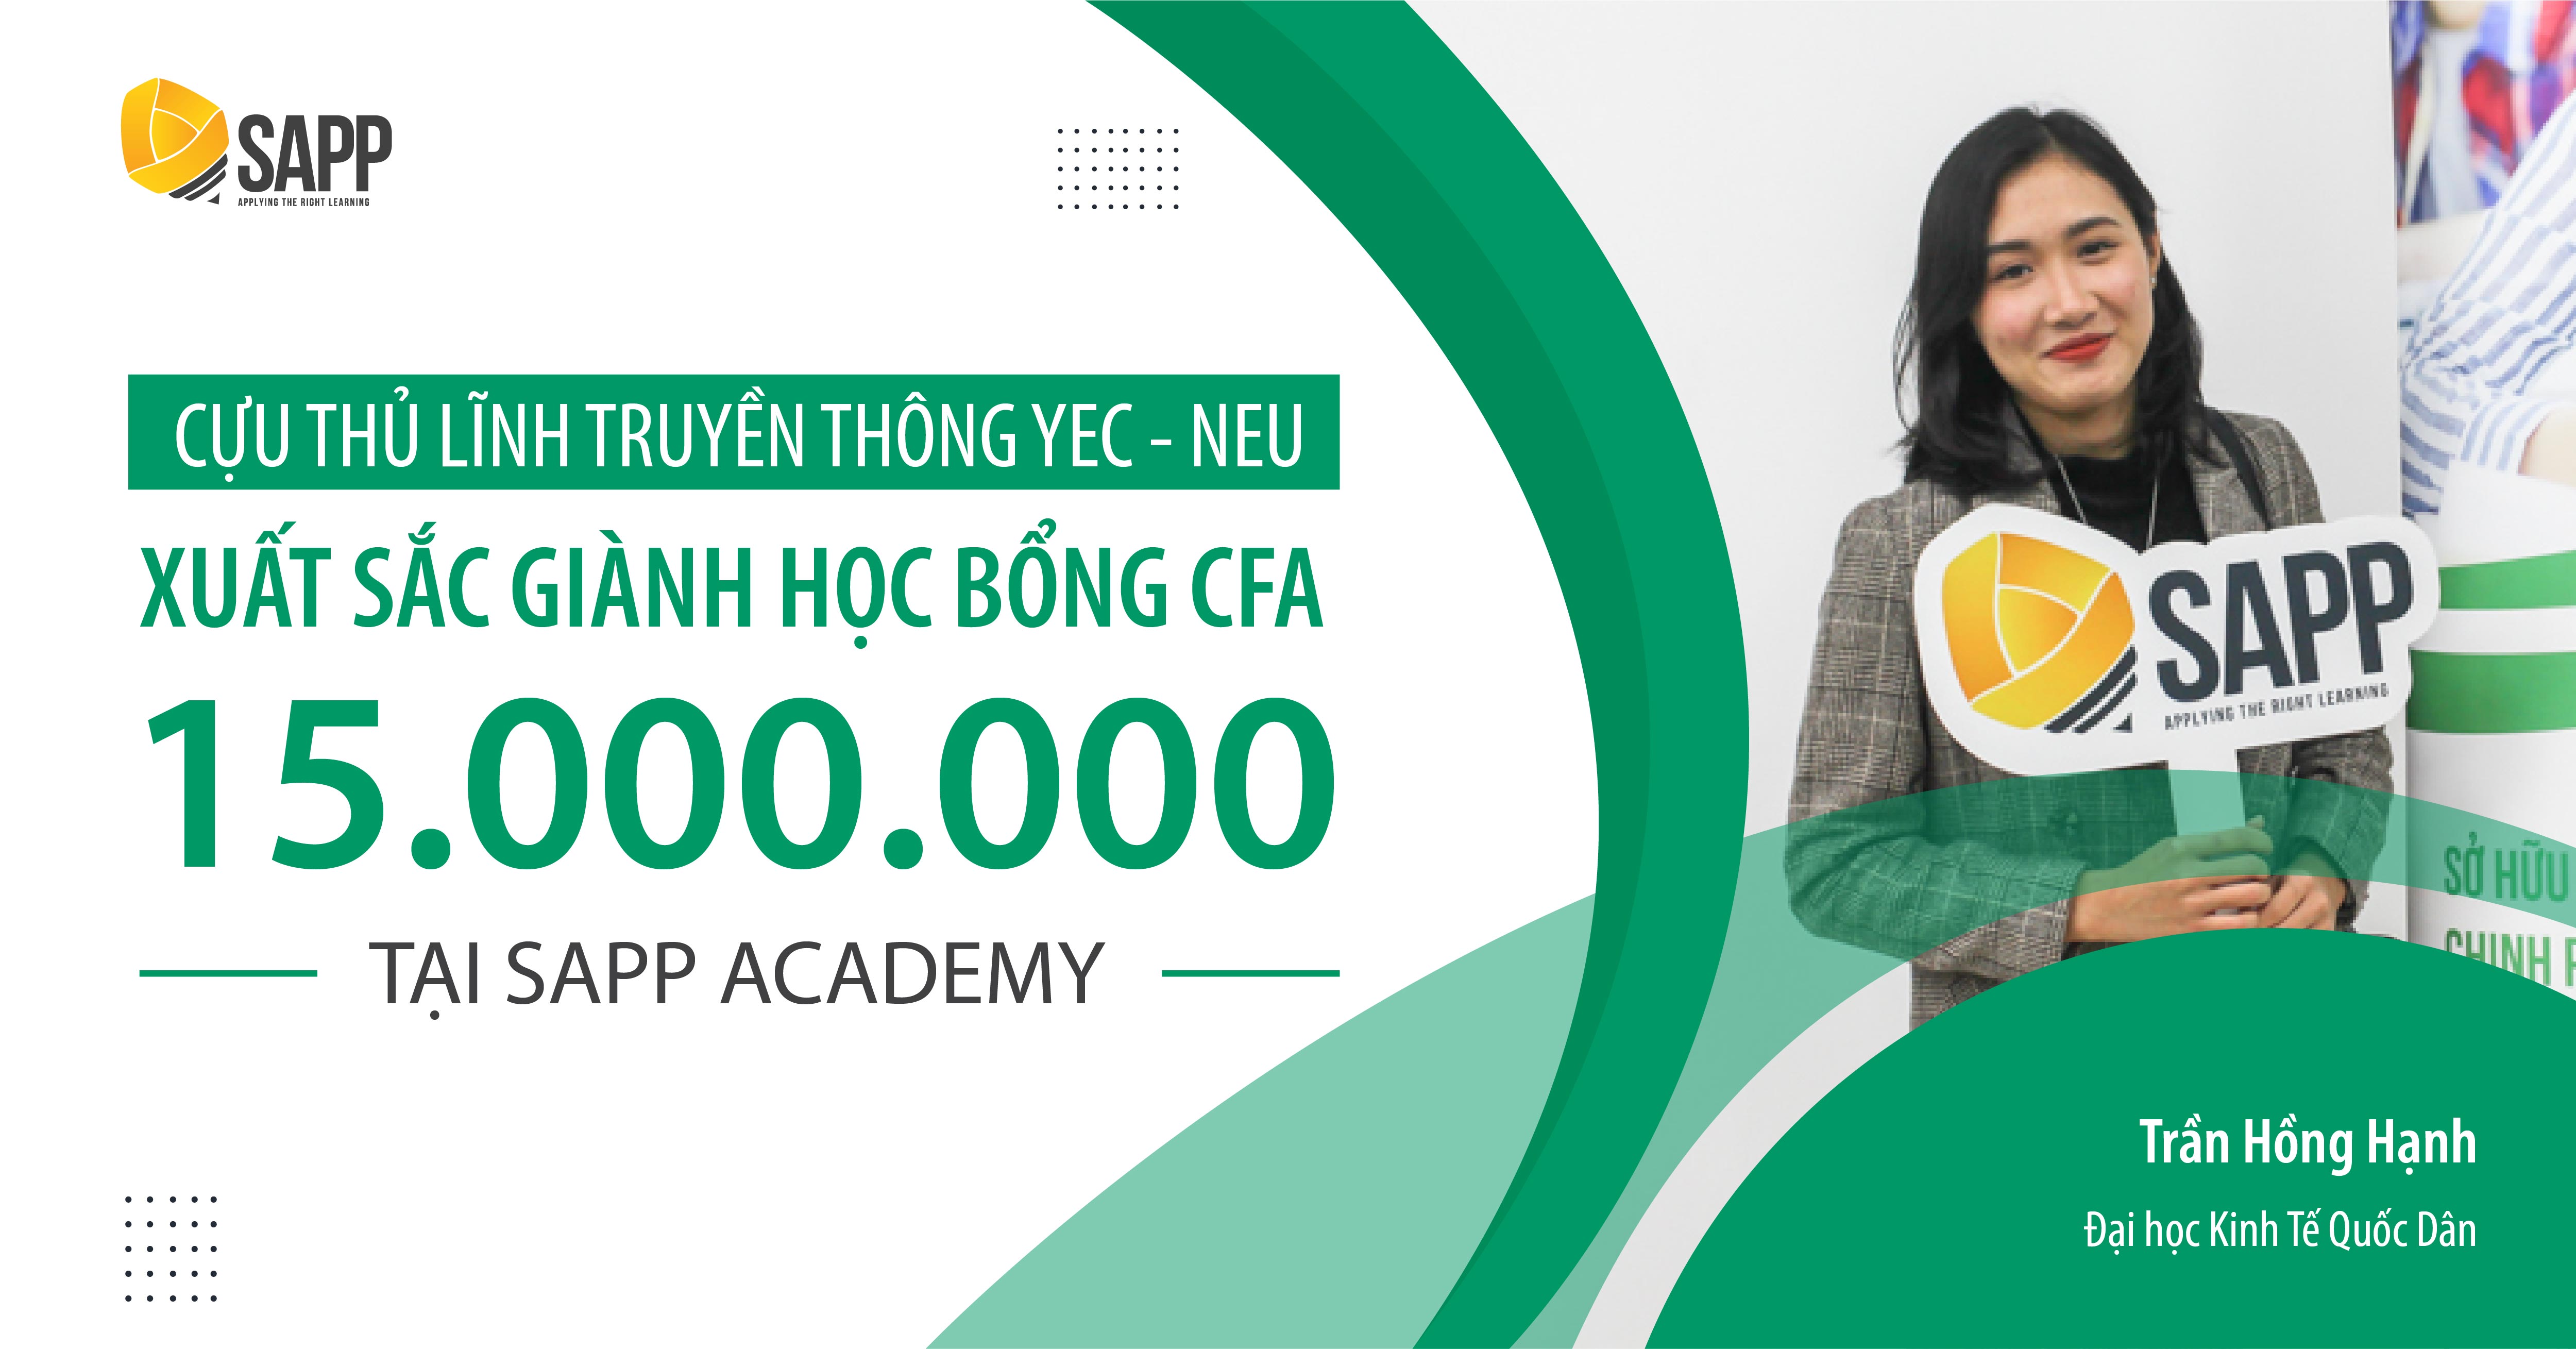 Cựu thủ lĩnh truyền thông YEC - NEU xuất sắc giành học bổng CFA 15.000.000 VNĐ tại SAPP Academy